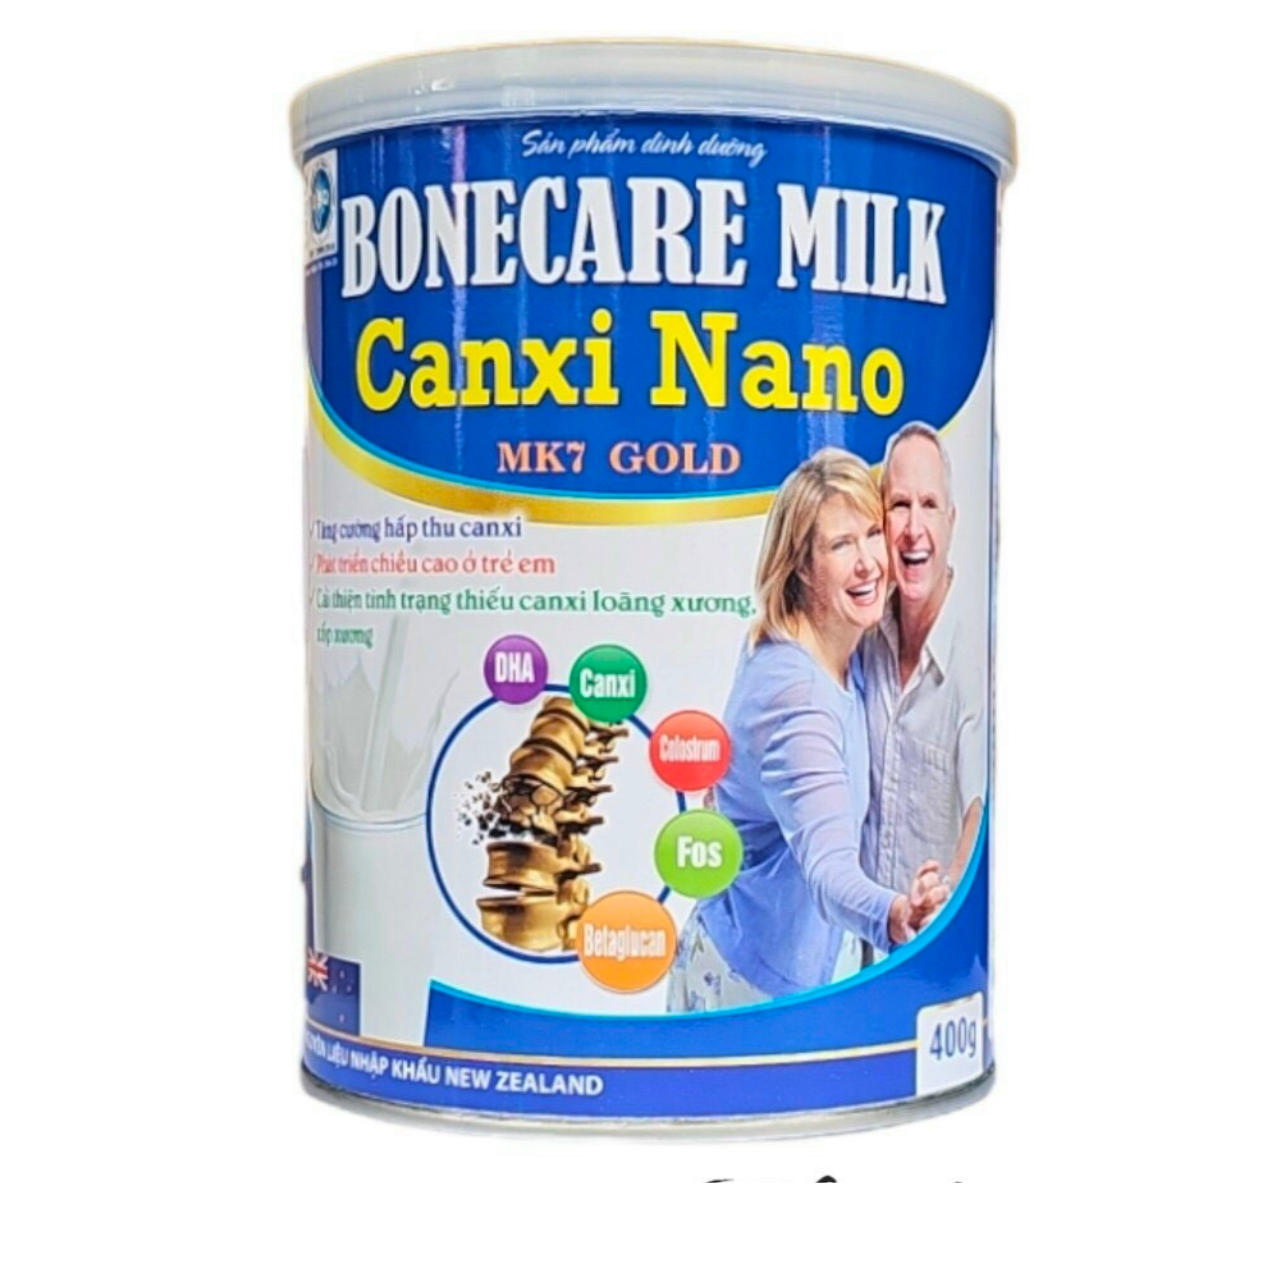 Sữa Bonecare Milk Canxi Nano MK7 Gold Hộp 900g- Bổ Sung,Tăng Cường Hấp Thu Canxi, Phát Triển Chiều Cao Trẻ Em